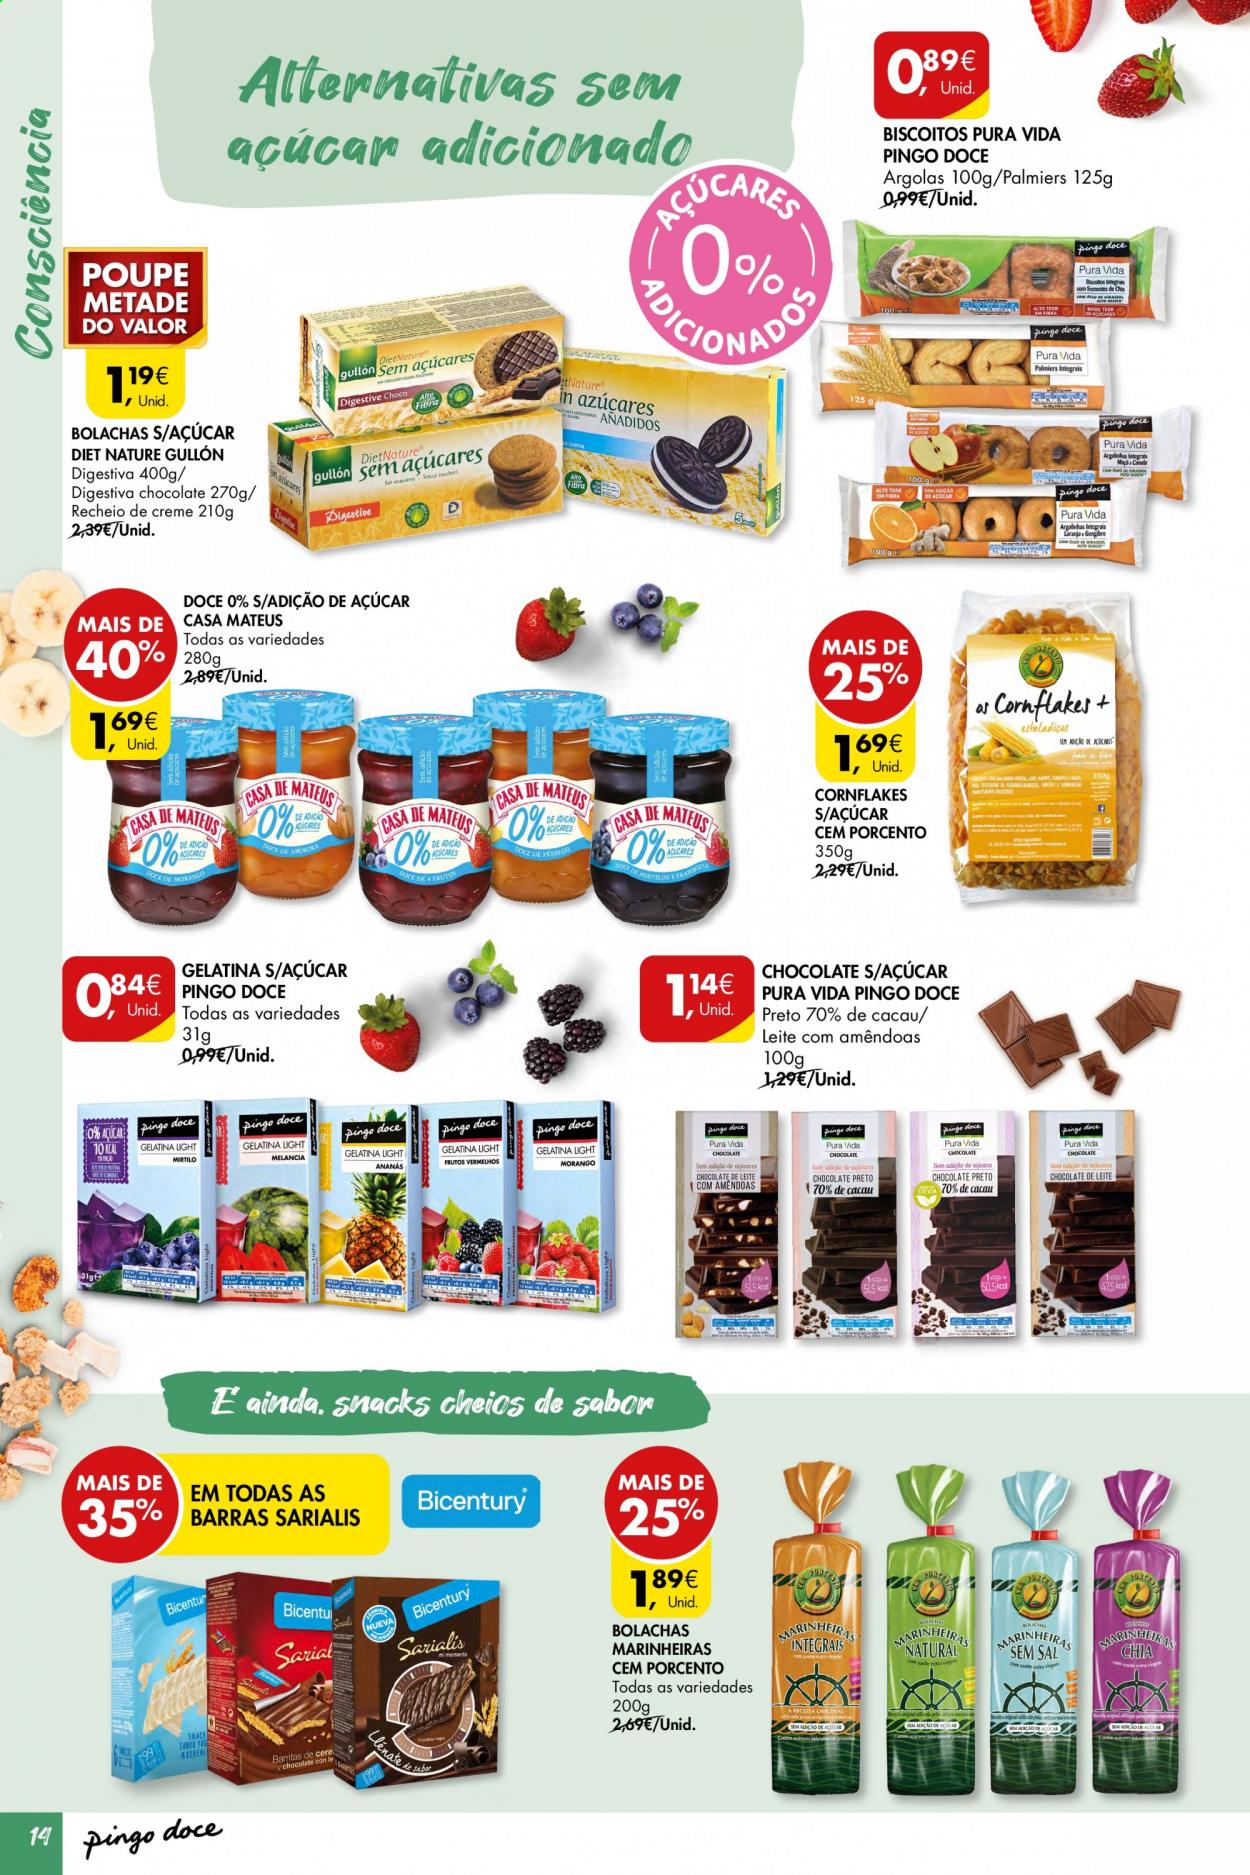 thumbnail - Folheto Pingo Doce - 6.4.2021 - 19.4.2021 - Produtos em promoção - leite, chocolate, biscoito, bolachas, bolachas marinheiras, gelatina. Página 14.